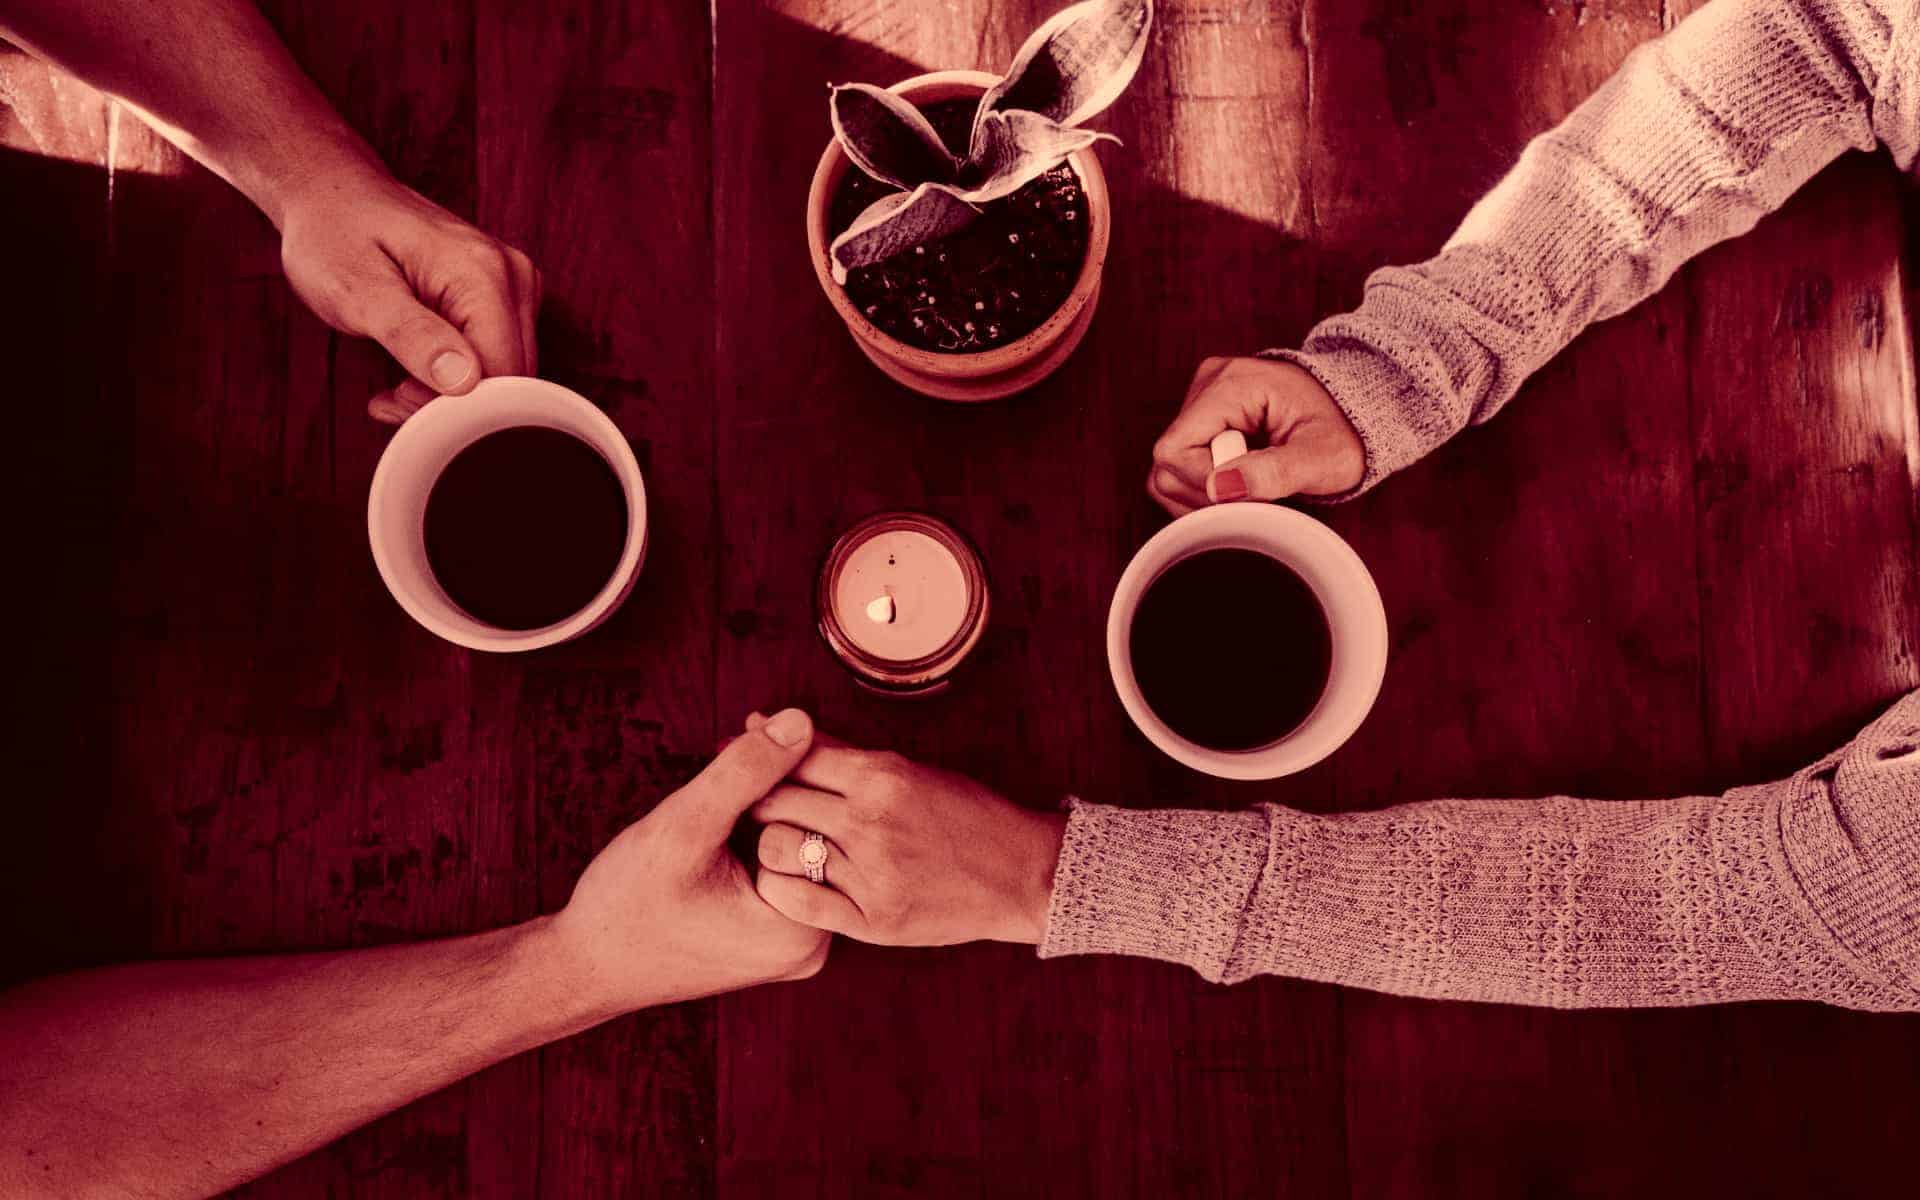 Se ven los brazos de dos personas que se dan la mano, mientras toman un café.